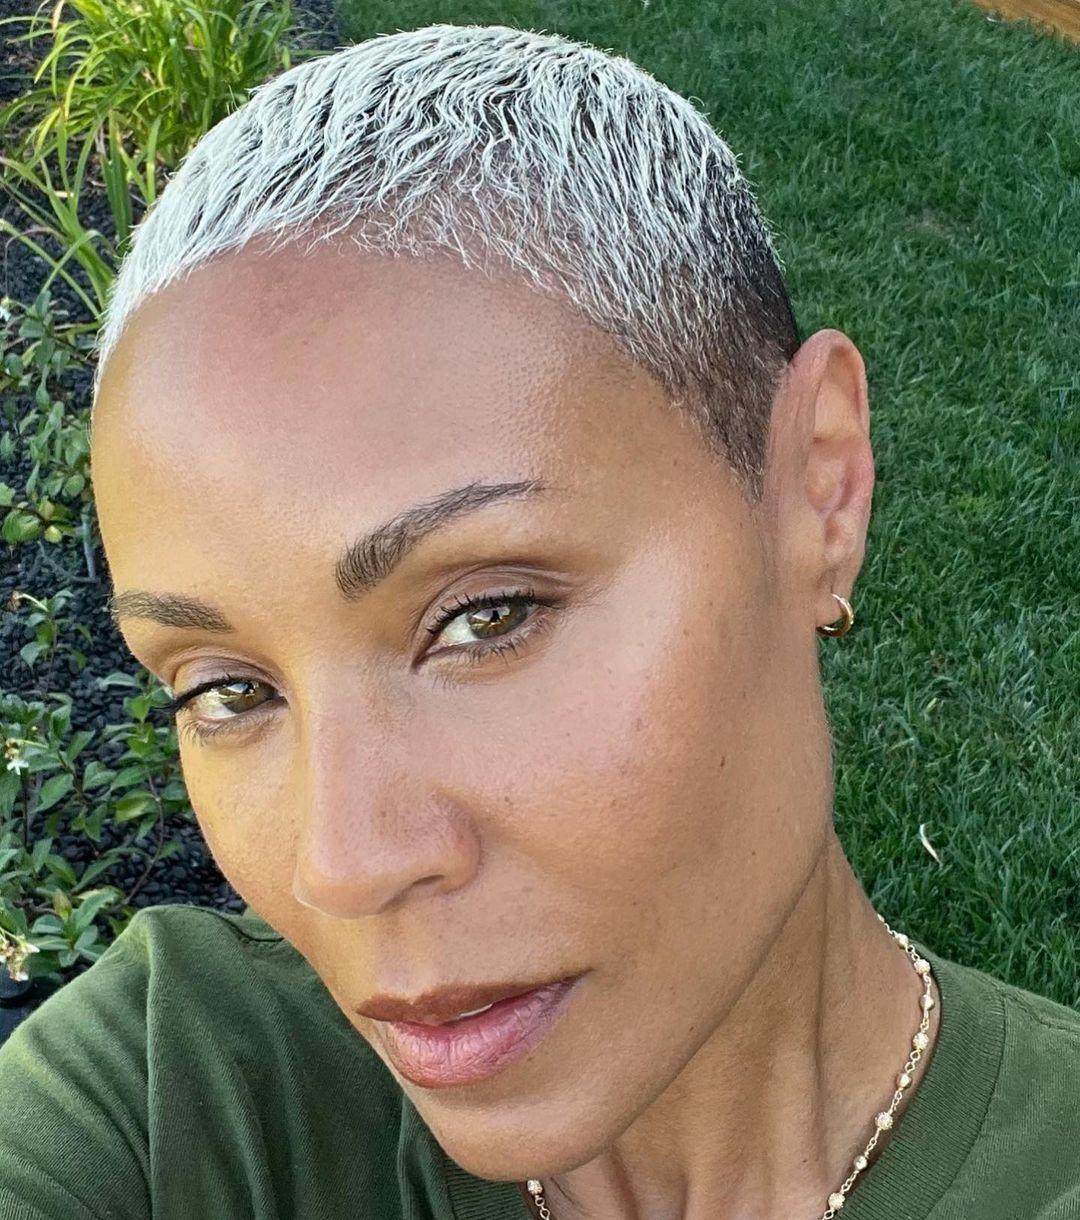 ///Jada Pinkett Smith Shares New Hair Growth